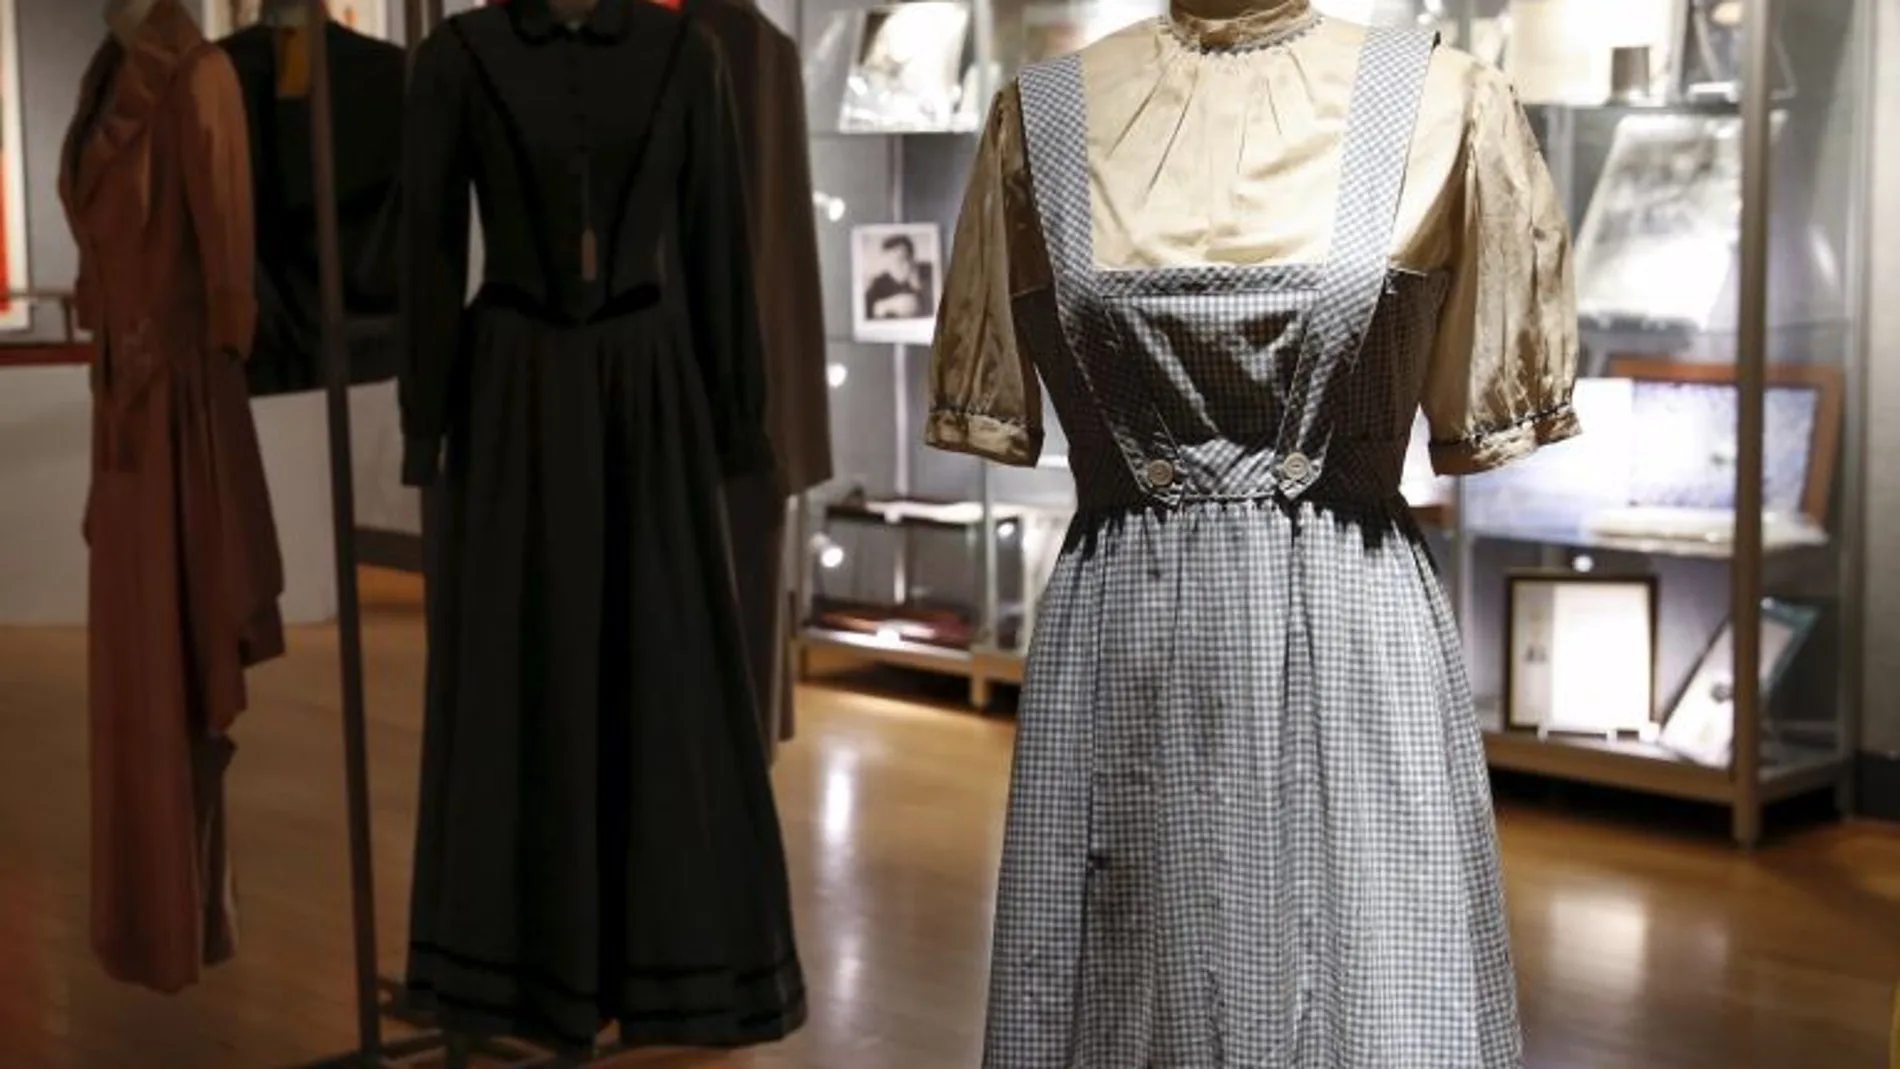 El vestido de "Dorothy", interpretada por Judy Garland en "El mago de Oz"